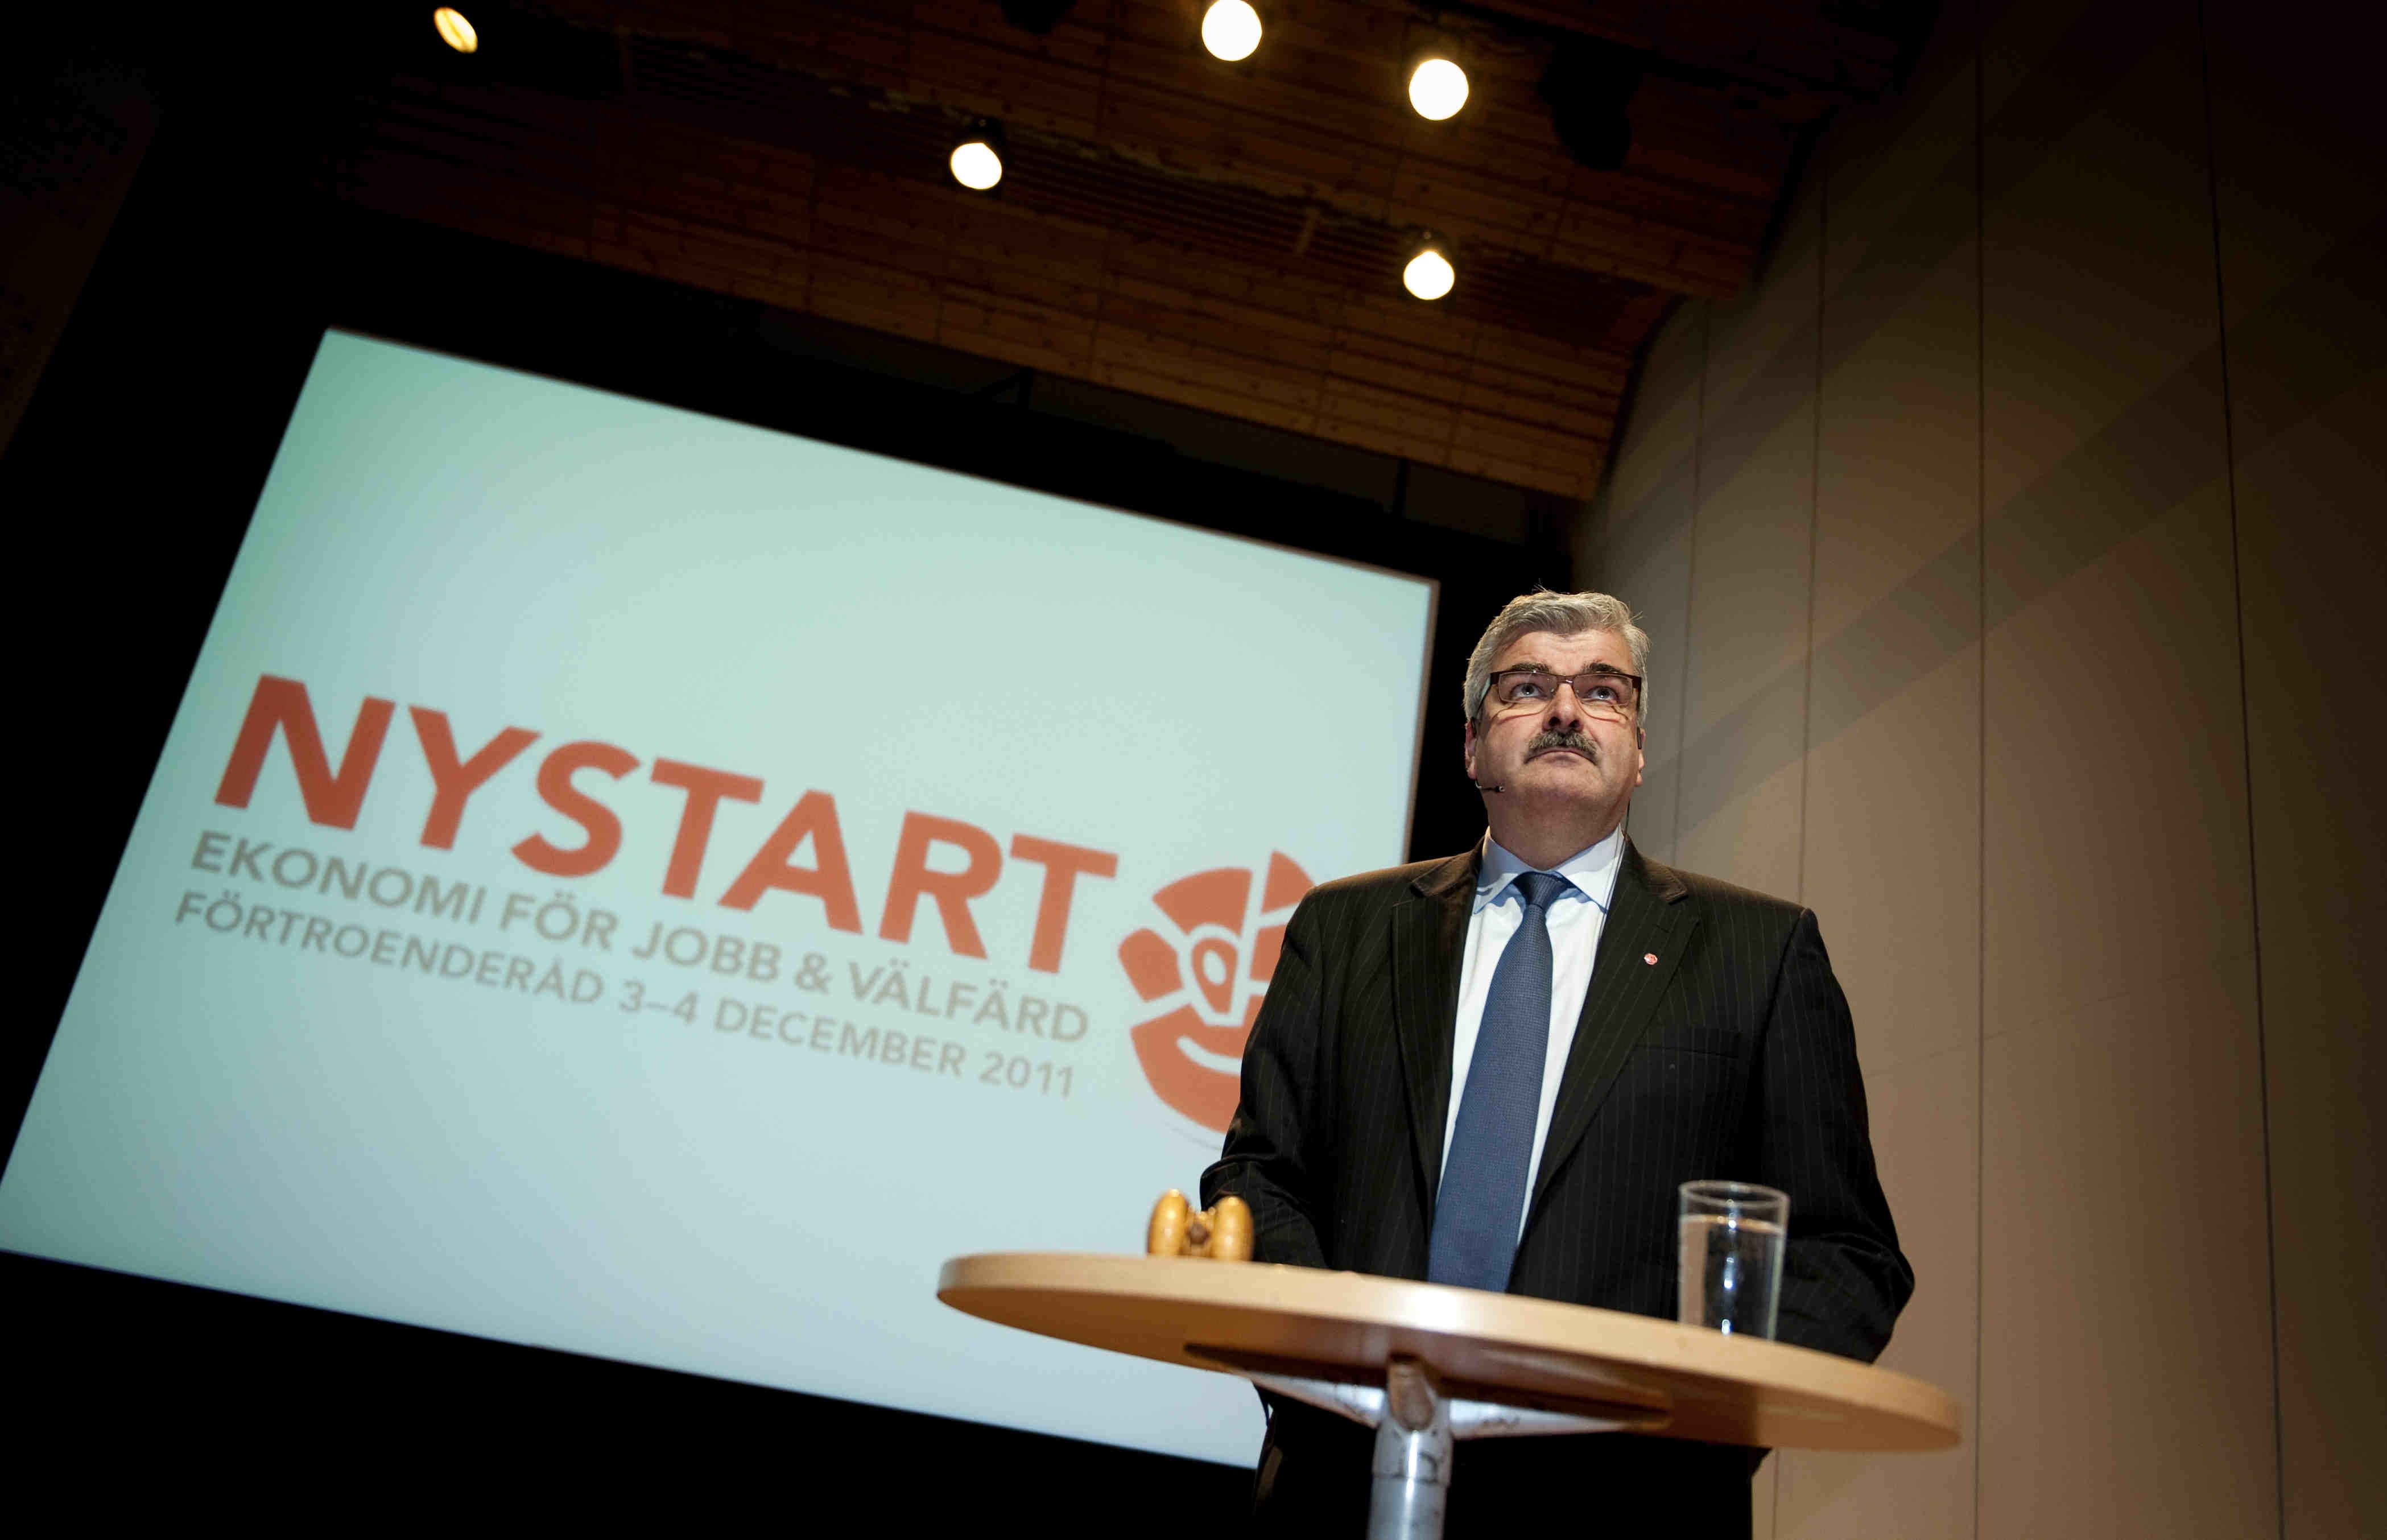 Alliansen, Håkan Juholt, Socialdemokraterna, Moderaterna, Politik, Oppositionen